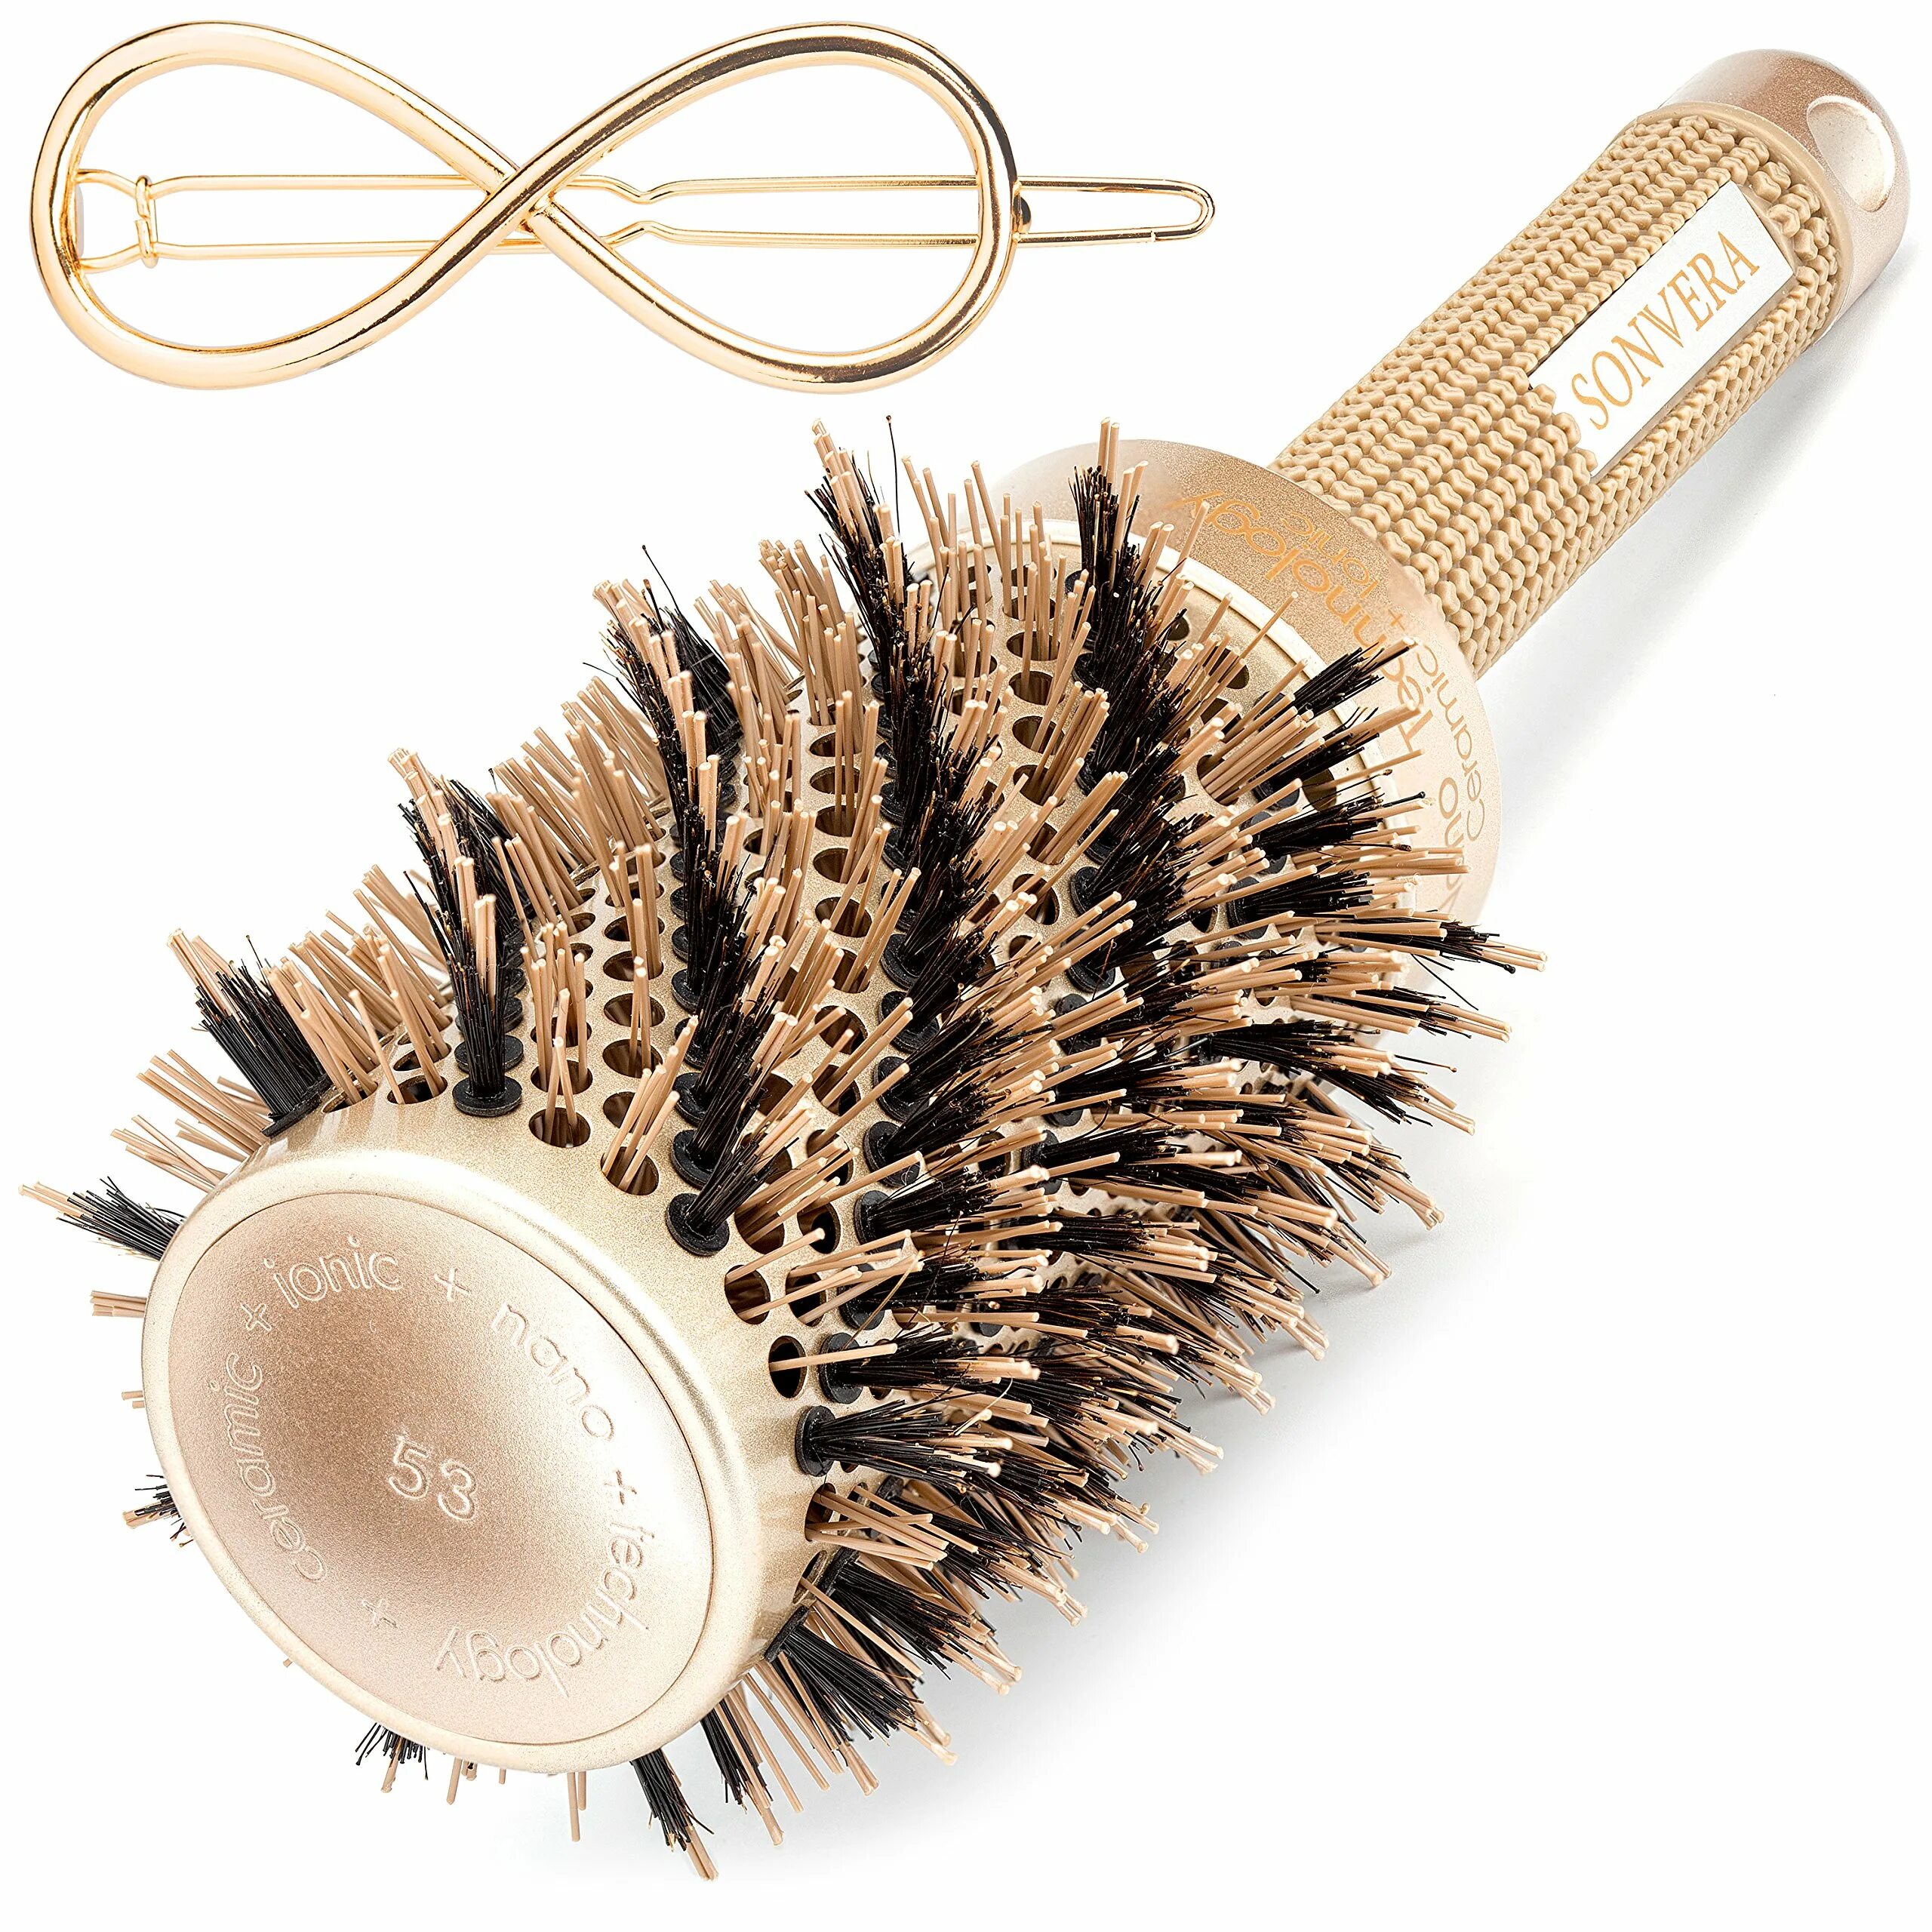 Round brush. Щетка для сушки волос круглая. Round Brush for hair. Brushing Round hair. Max Pro Ceramic Round hair Dryer Brush.